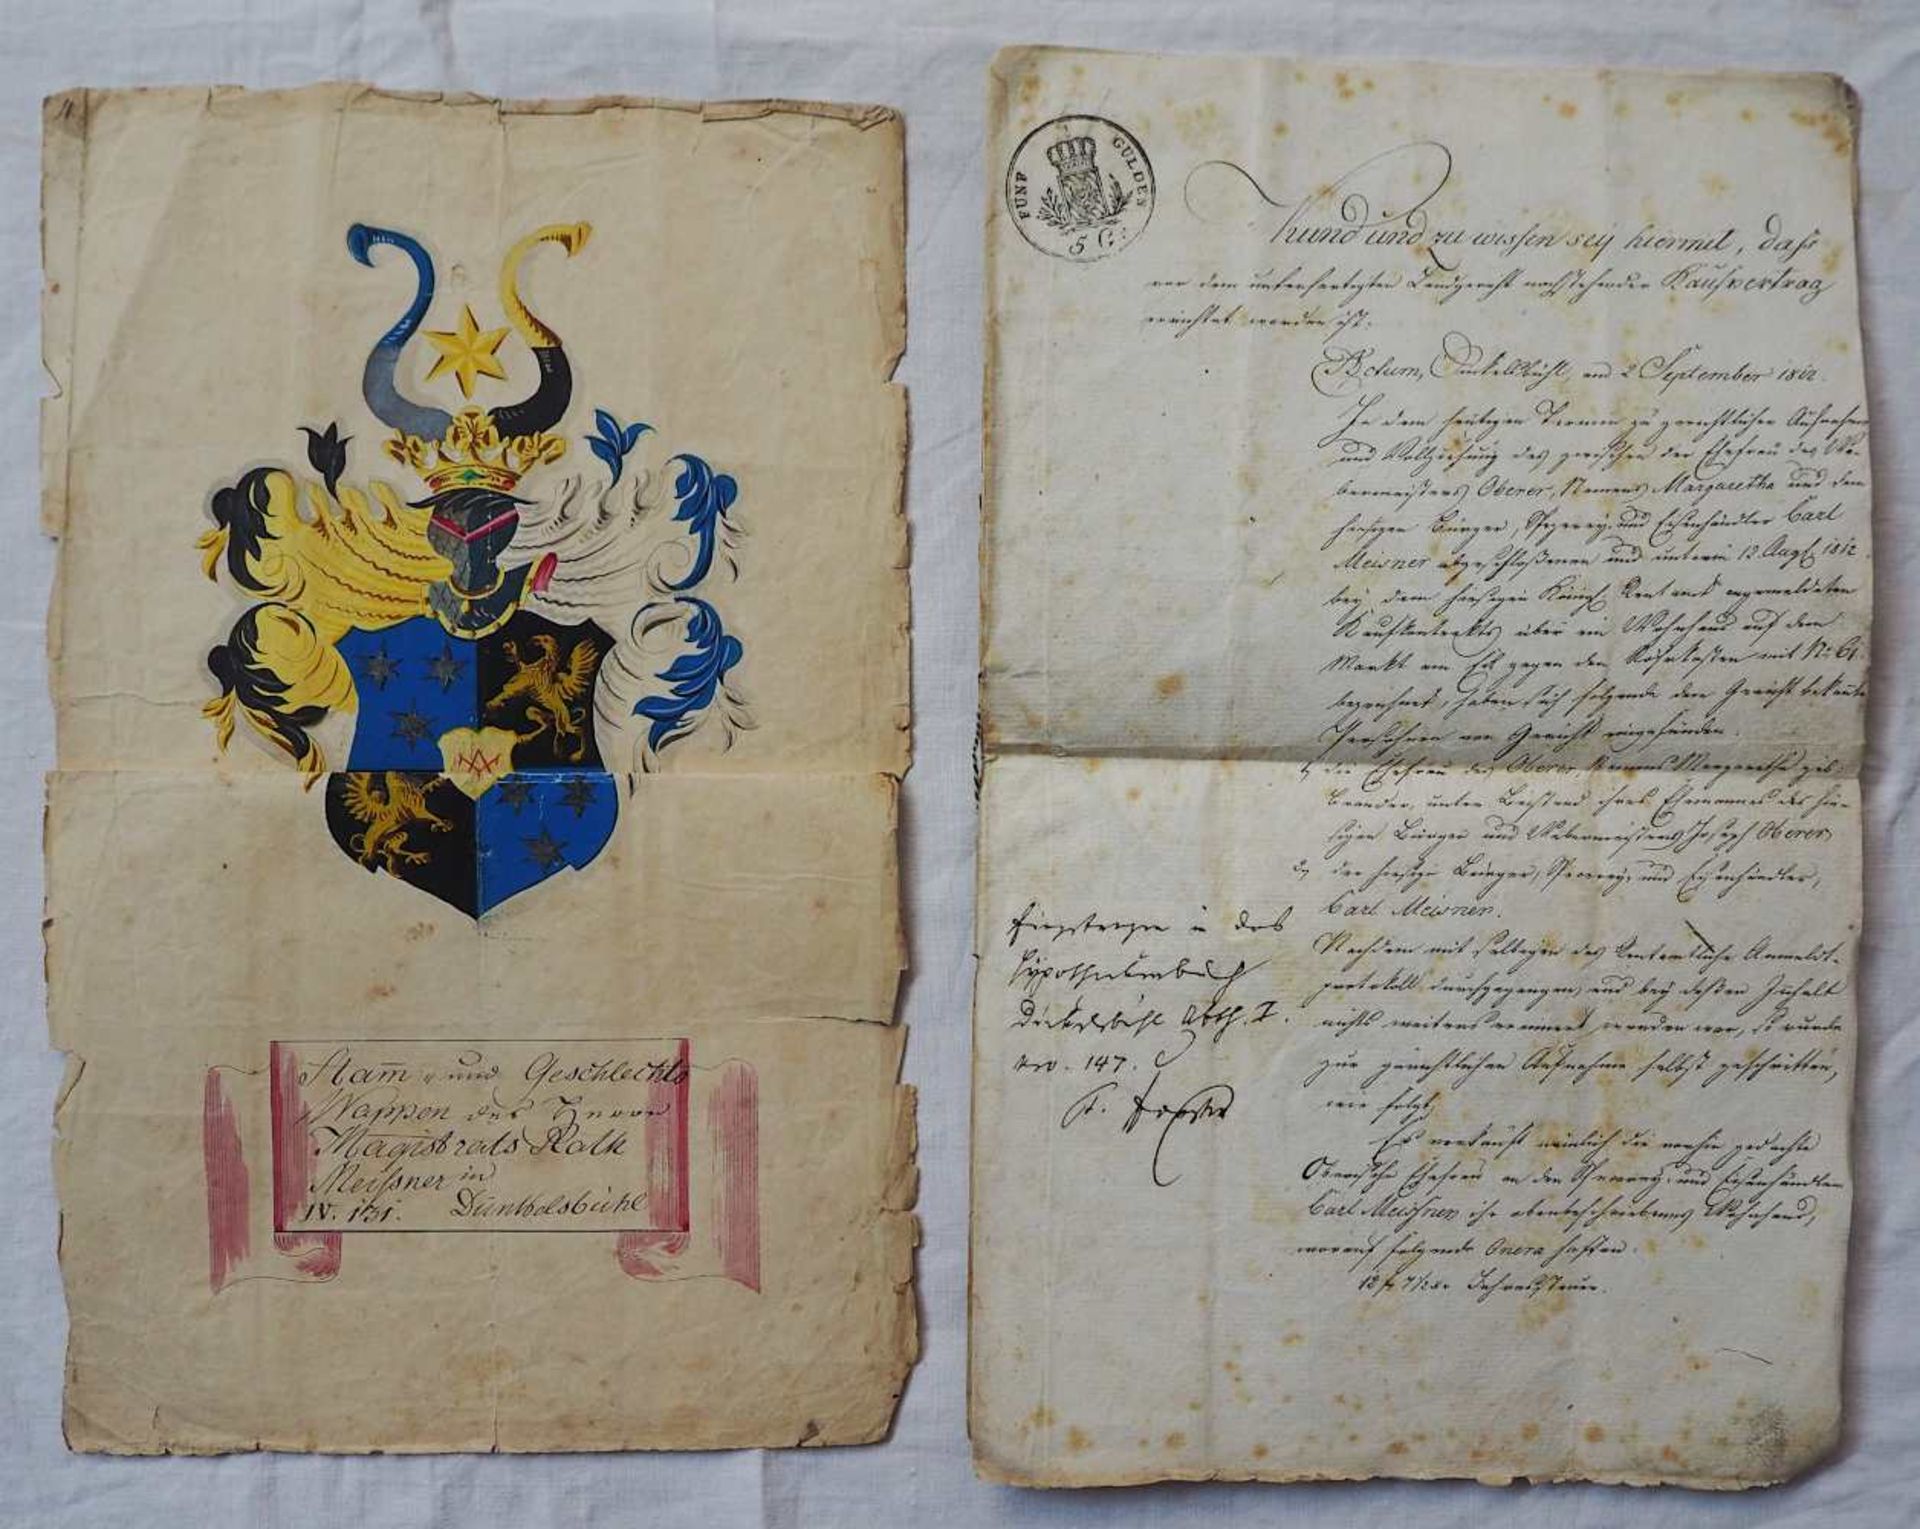 1 altkolorierte Wappenzeichnung des Dinkelsbühler Magistratsrathes CARL MEISSNER (wohl 17.-18.